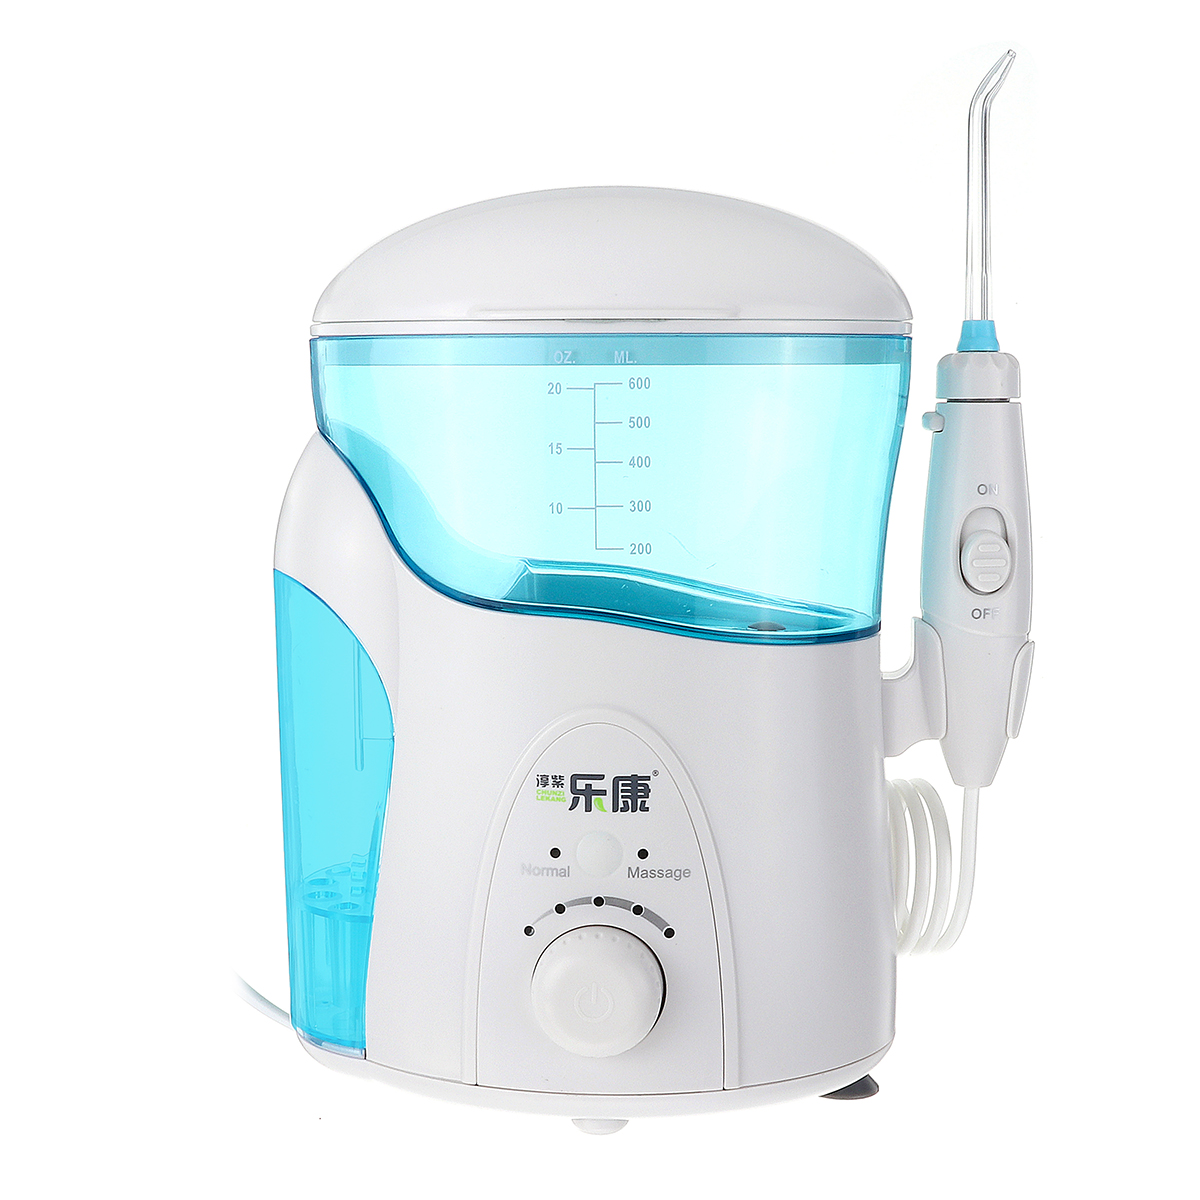 600ML-Electric-Nasal-Irrigator-Washing-Wash-Neti-Pot-Rinsing-Nose-Allergic-Irrigation-w-UV-Light-1400759